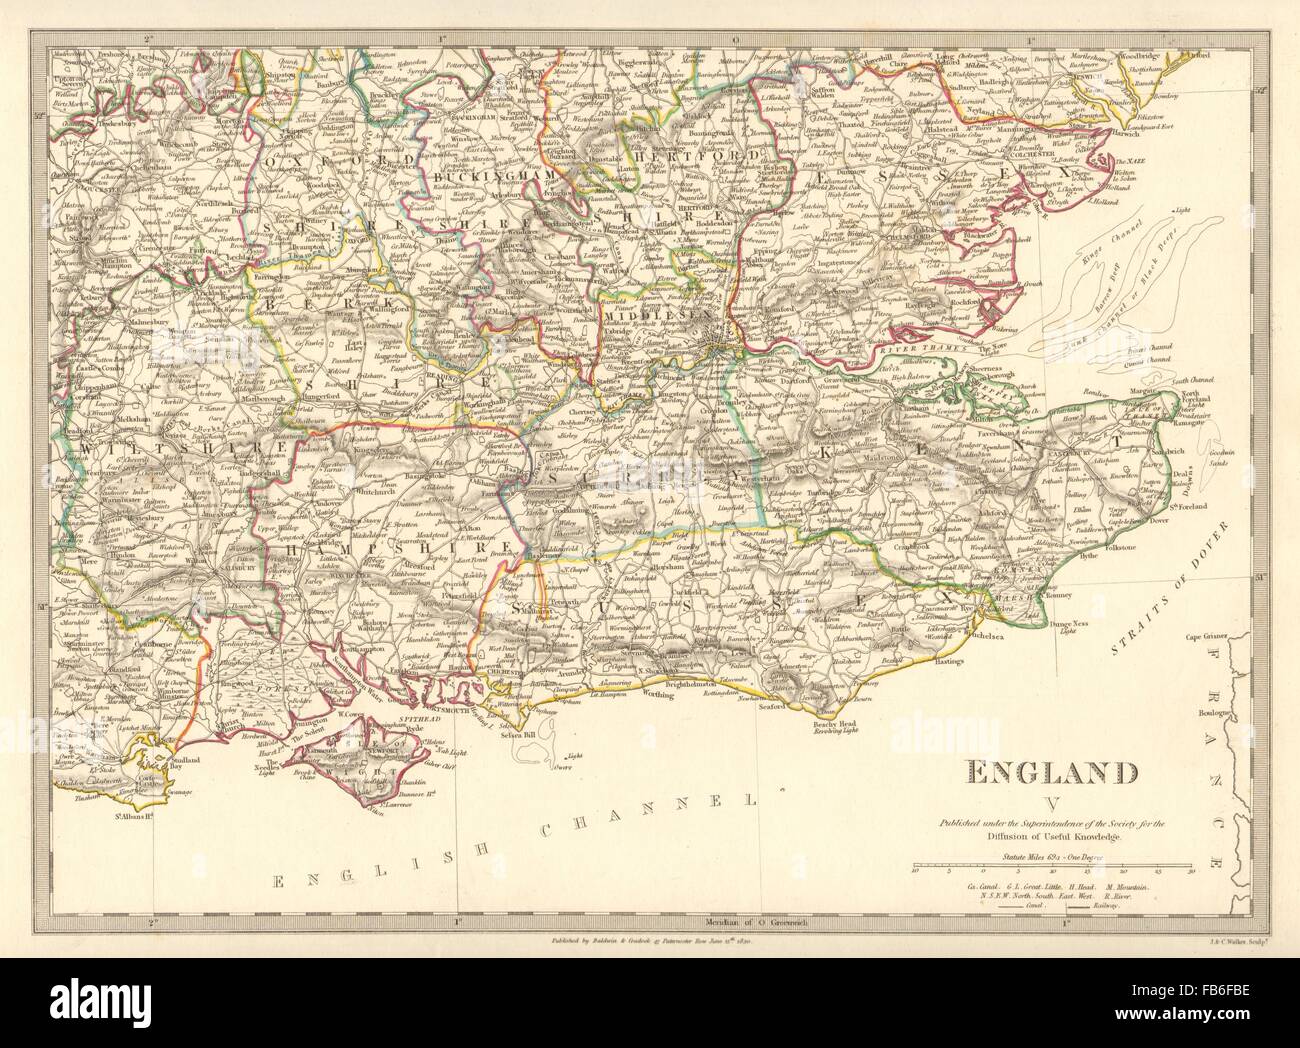 Inglaterra se: Middx Kent, Sussex, Surrey Hants Berks Essex Herts. SDUK, 1848 mapa Foto de stock